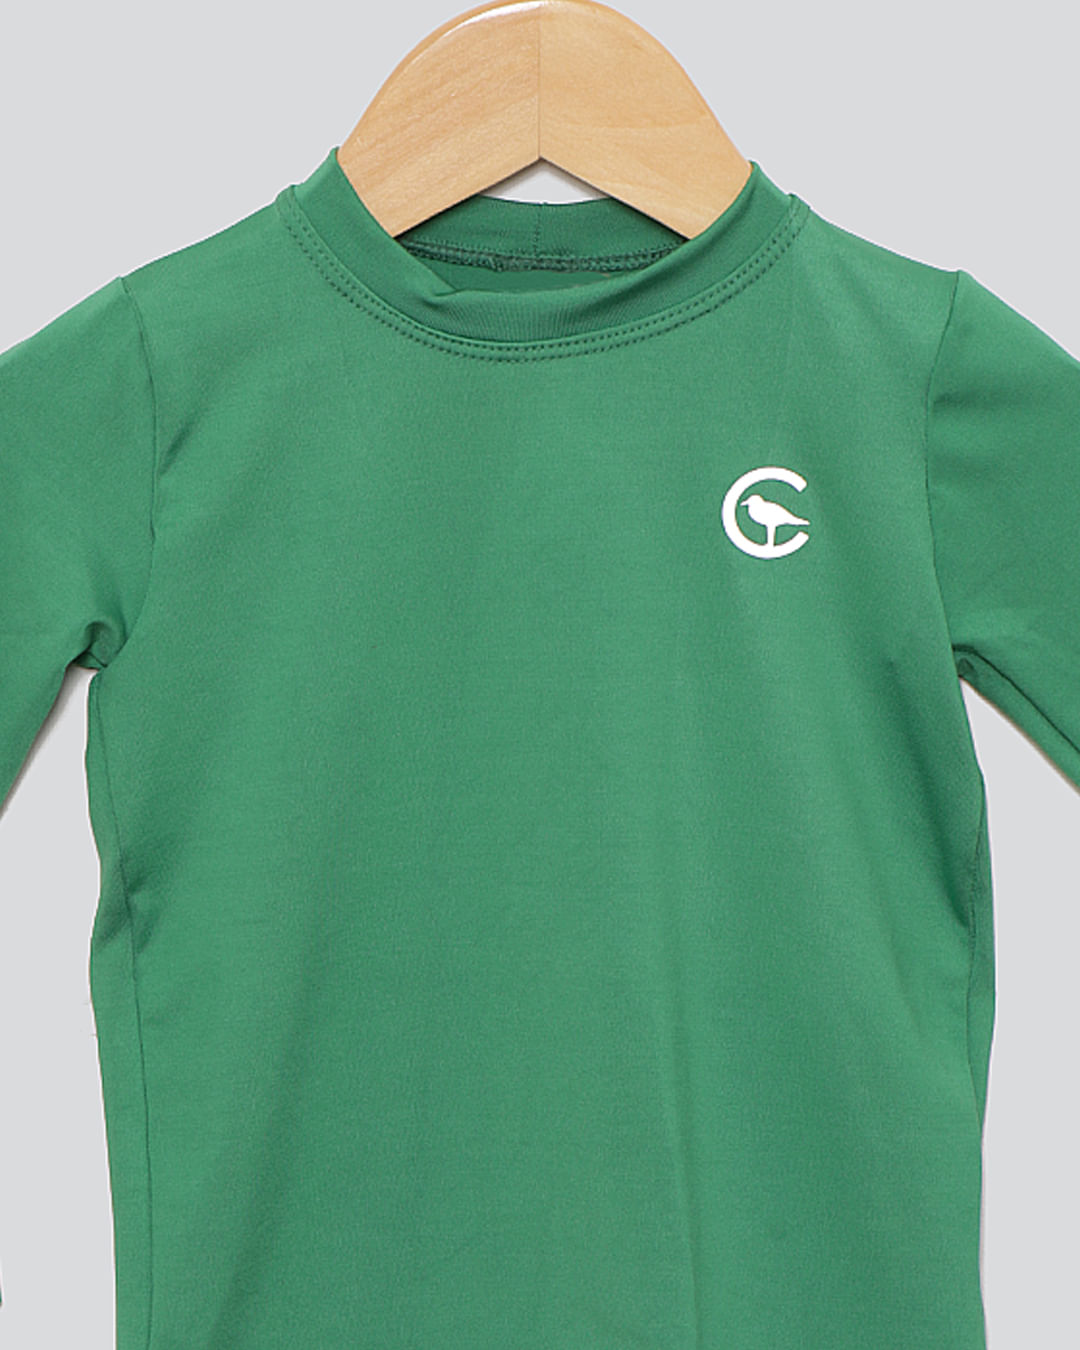 Camiseta-Bbo-Ml-Uv-Verde-253021---Verde-Escuro